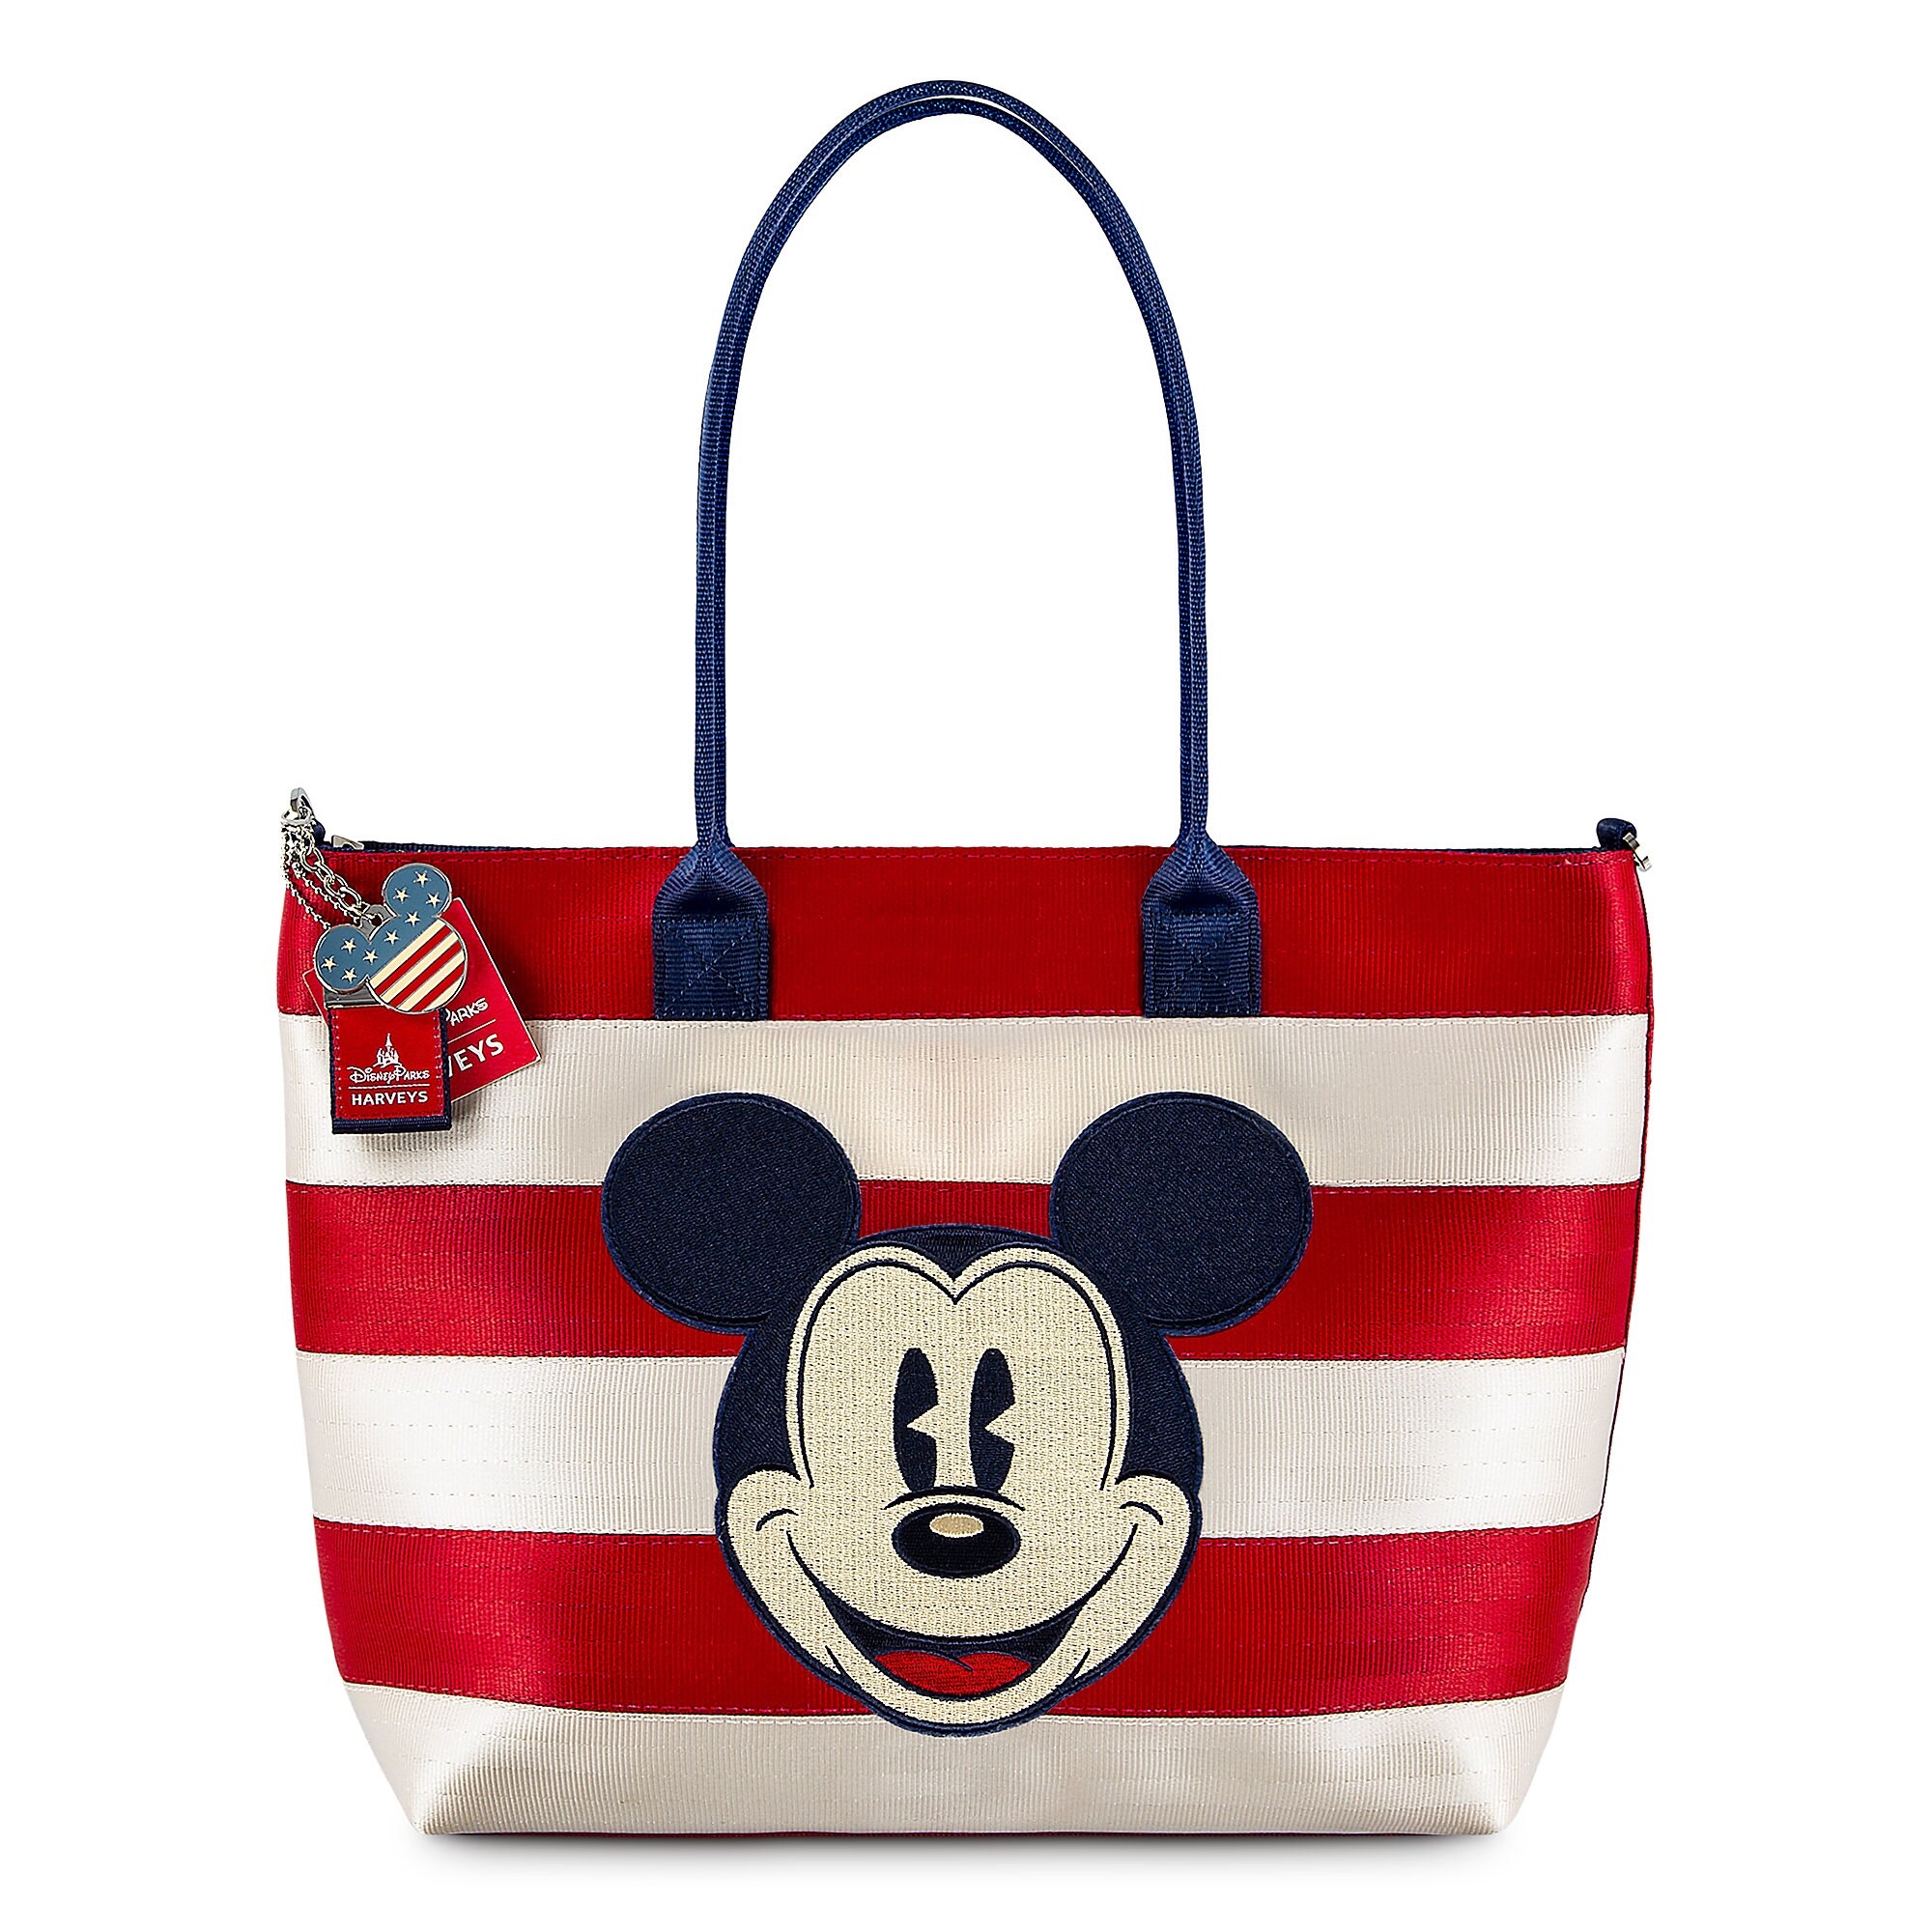 Mickey and Minnie Mouse Americana Streamline Tote by Harveys